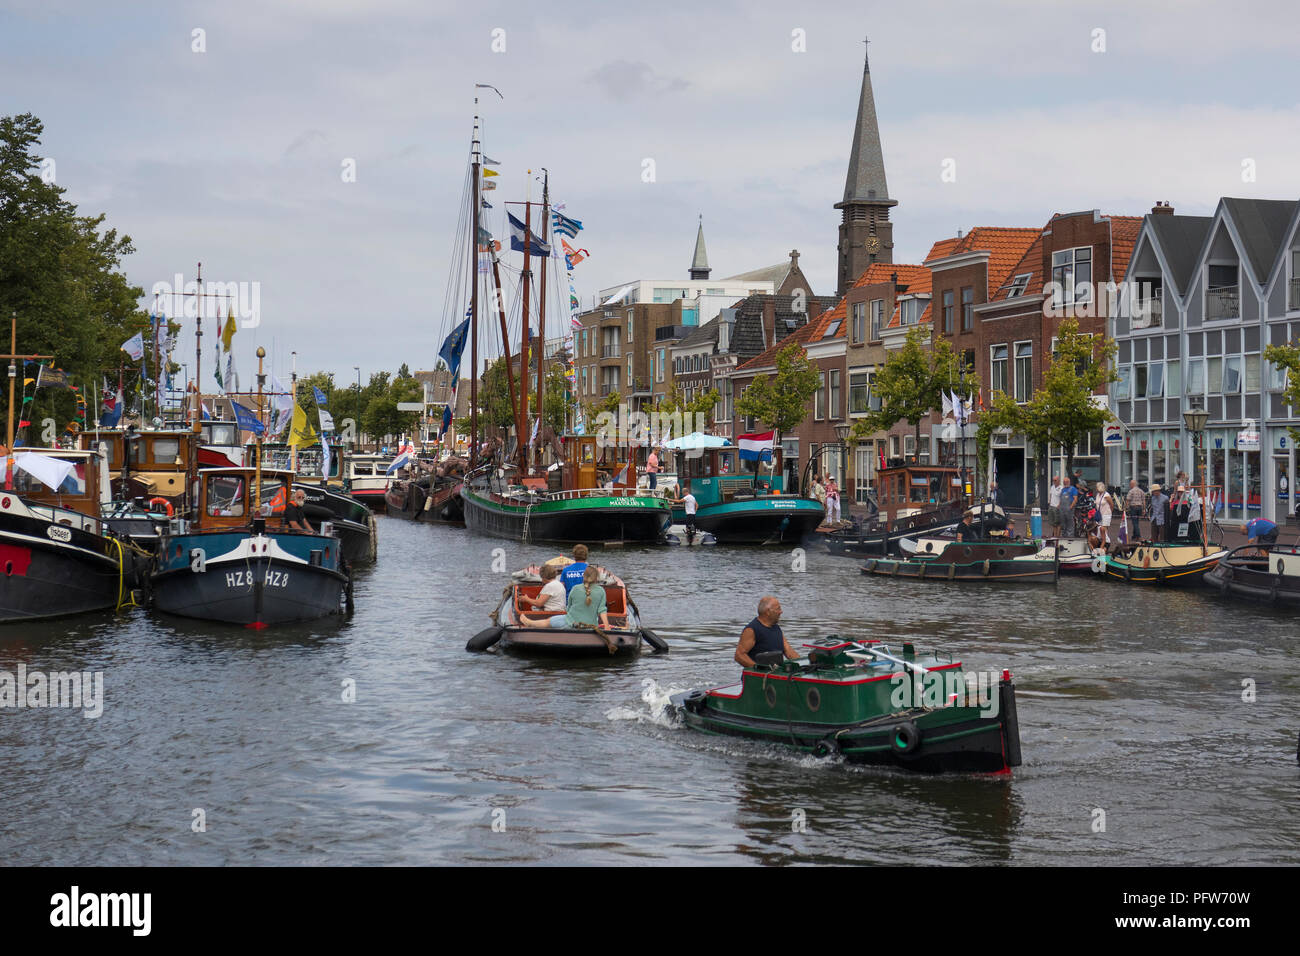 Leiden, Paesi Bassi - 28 Luglio 2018: storico opduwers o opdrukkers, piccolo rimorchiatore- o towboats, sul canal durante la vela Leiden 2018 Foto Stock